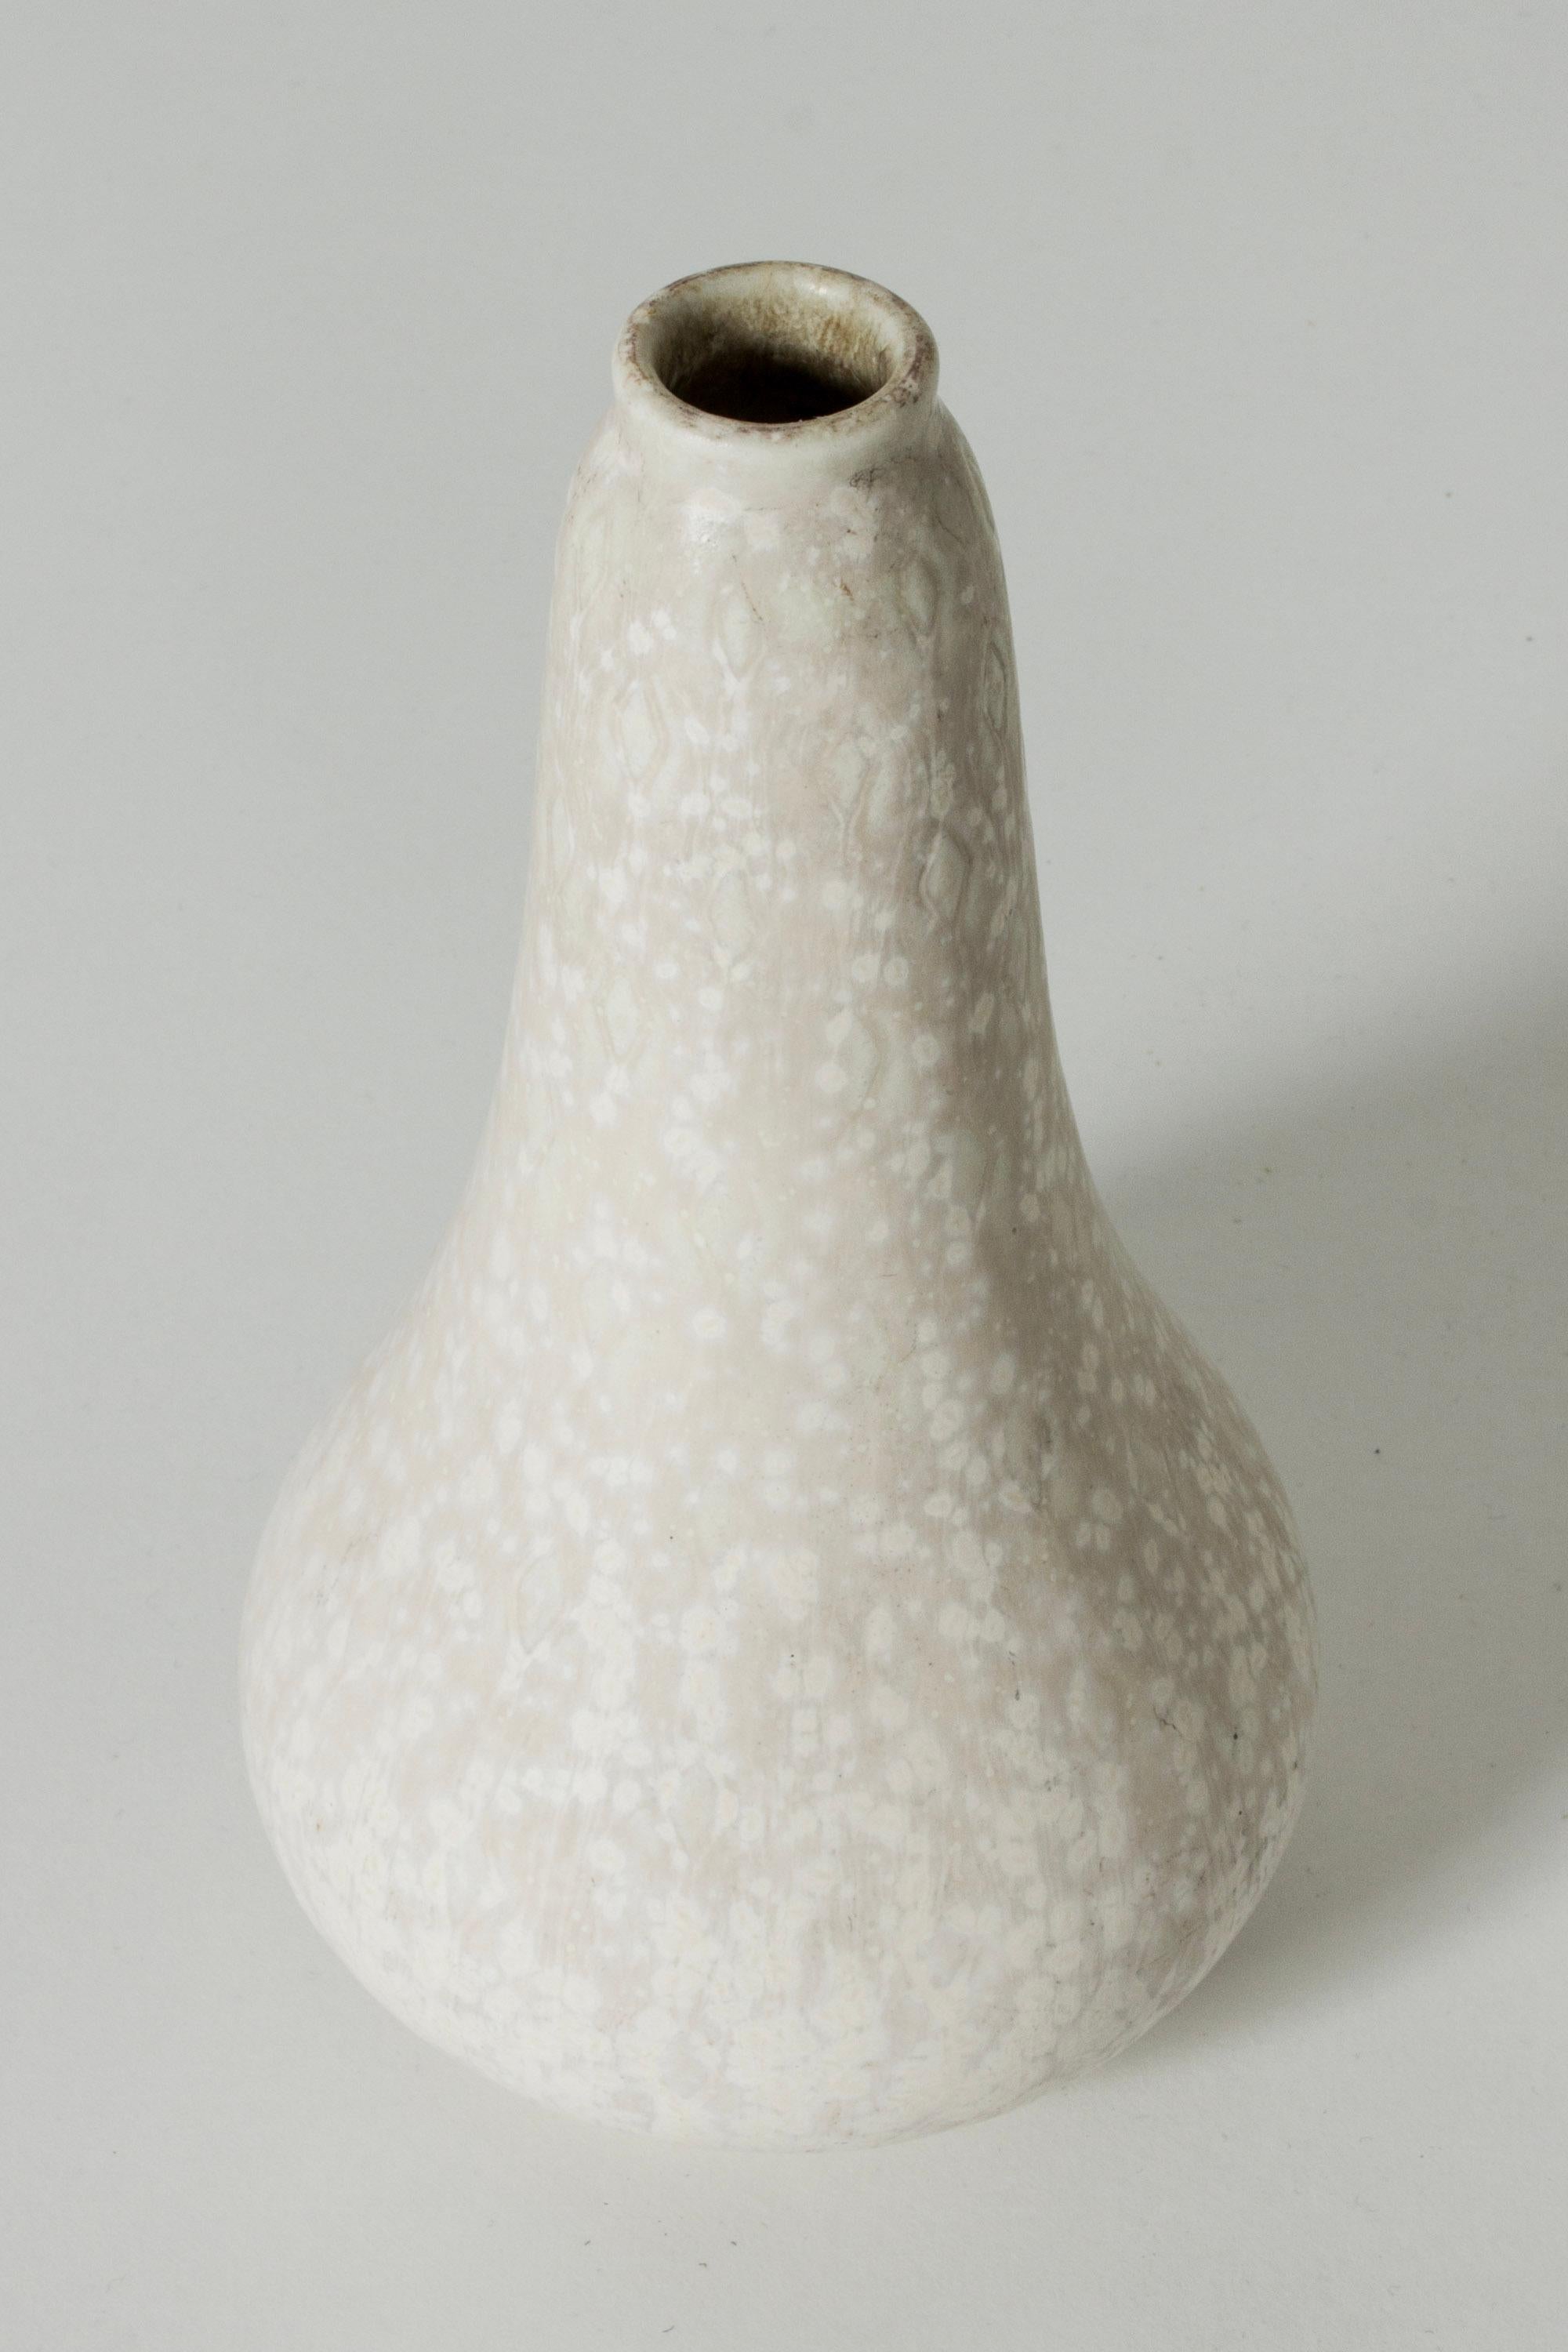 Scandinavian Modern Midcentury Stoneware Vase by Gunnar Nylund for Rörstrand, Sweden, 1940s